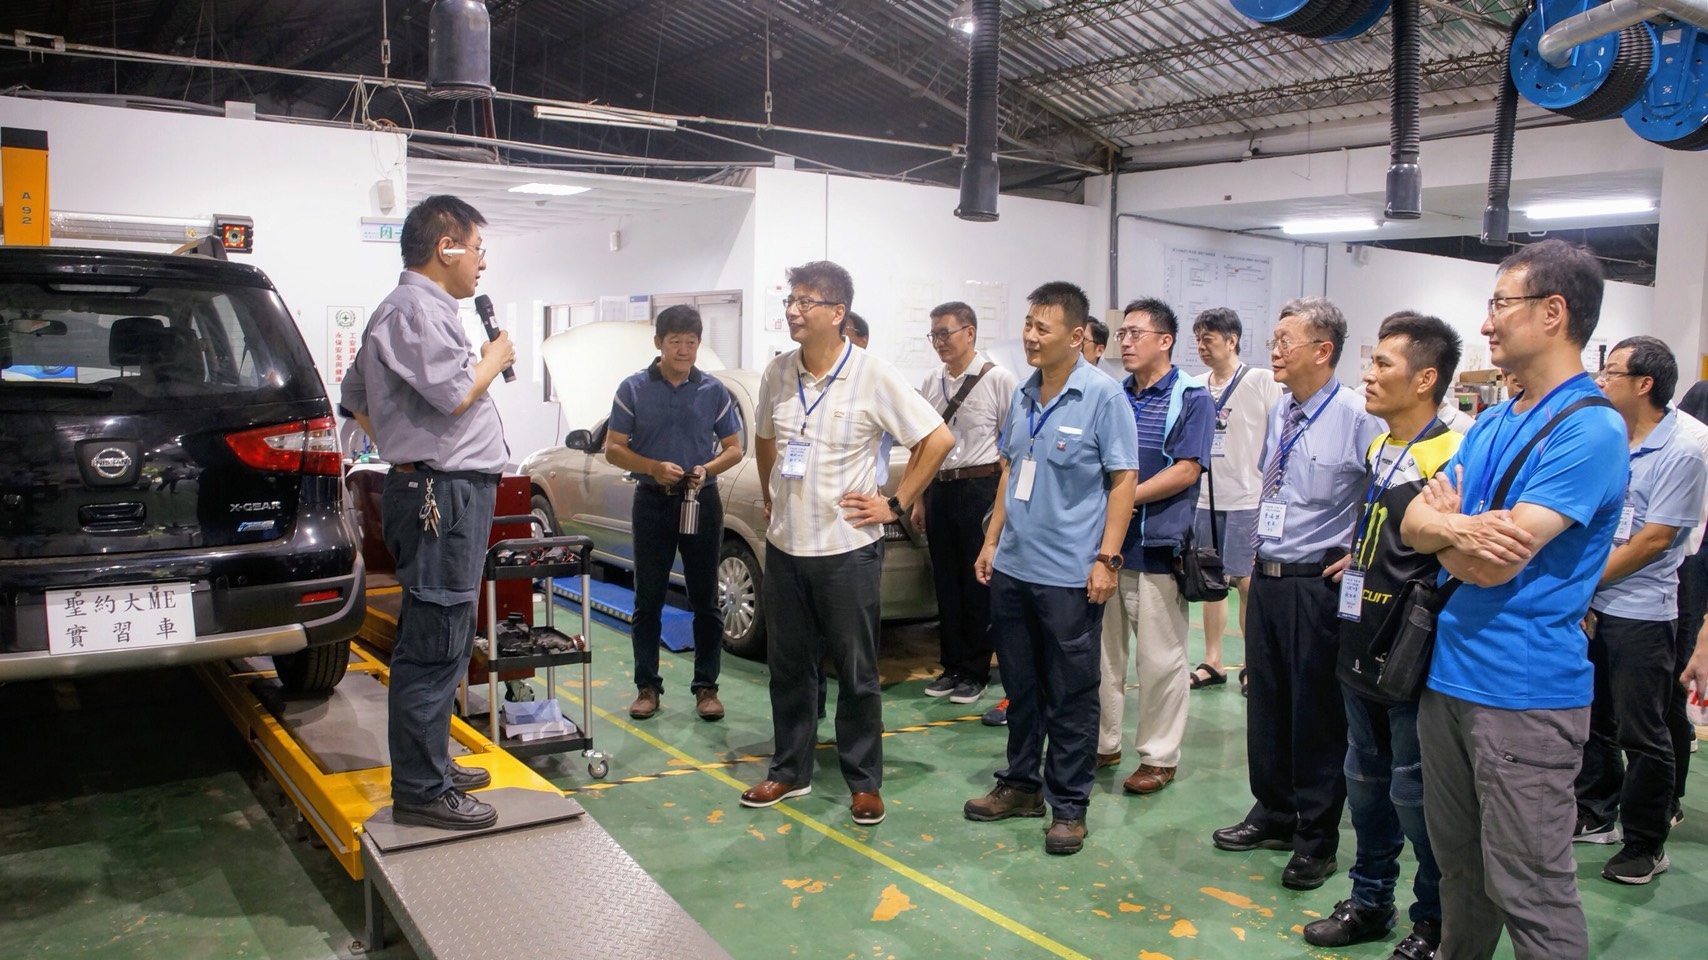 
校友參觀汽車工廠教學環境，機械系溫富亮老師（左一）導覽說明。